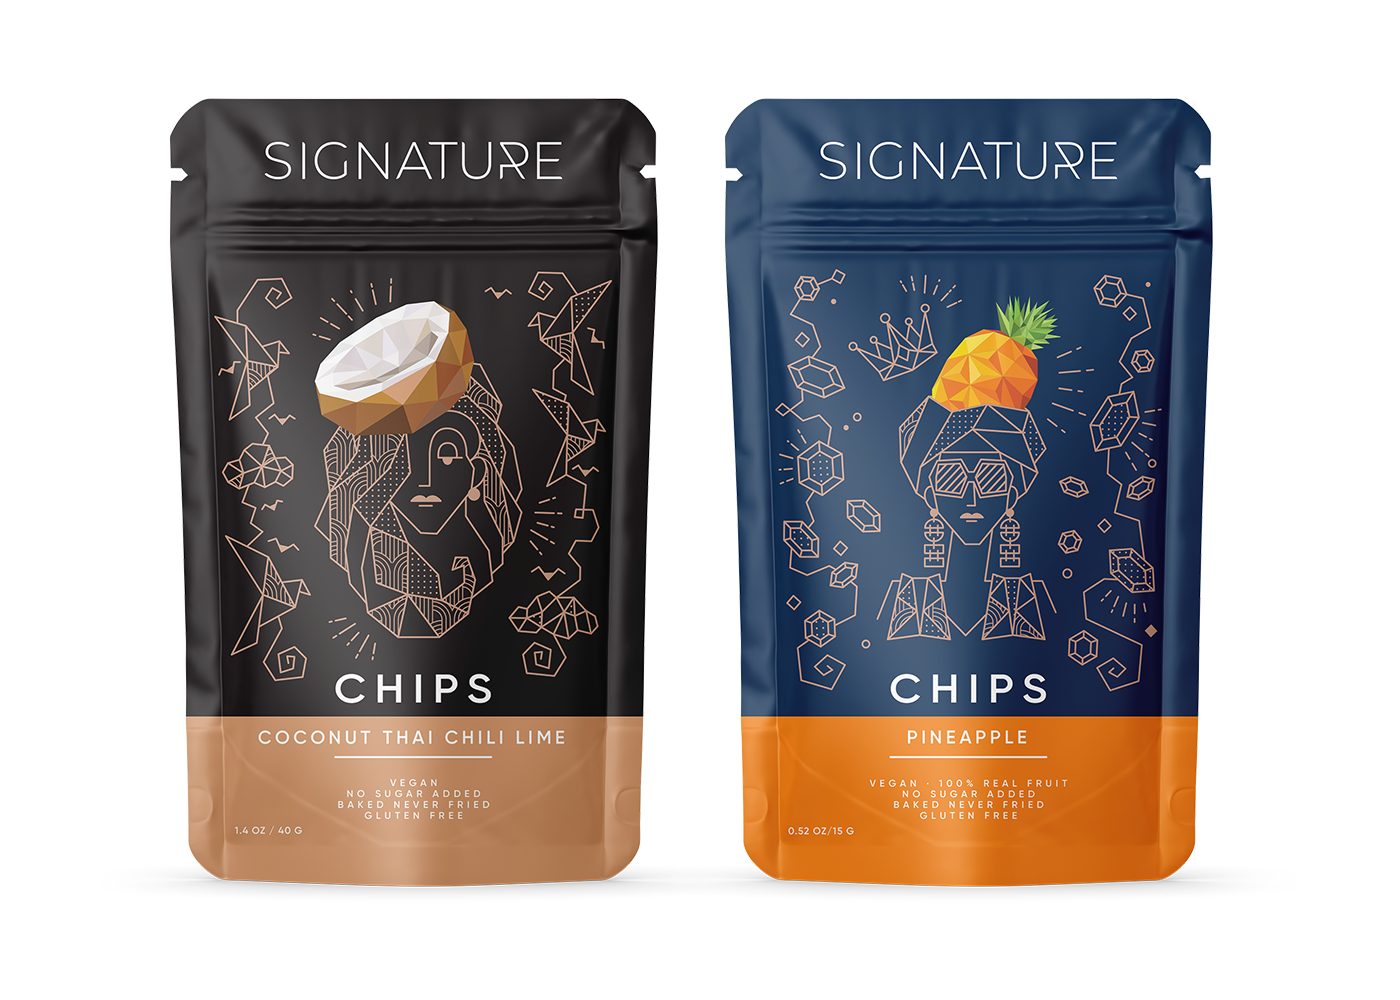 Дизайн упаковок чипсов для кофейни Signature в восточном стиле